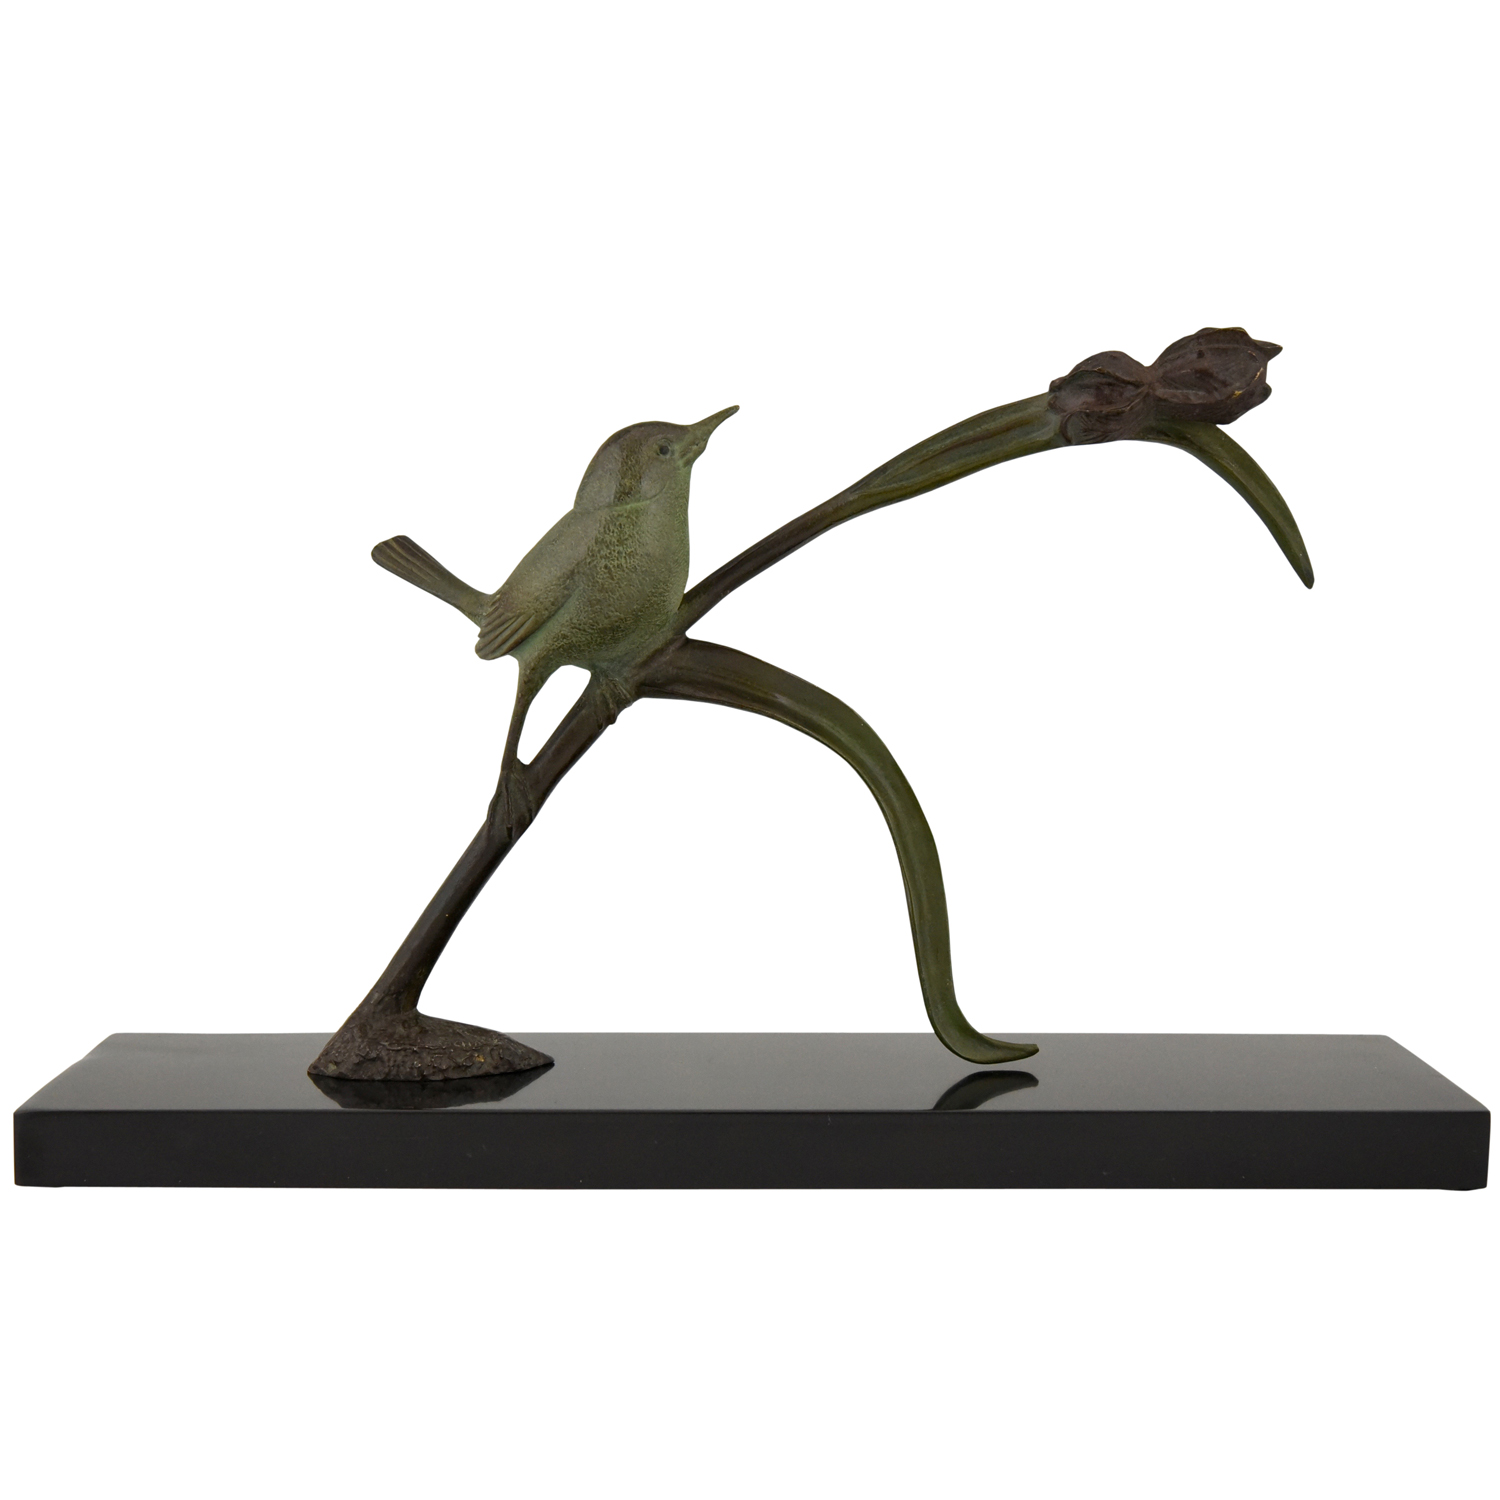 Art Deco bronze sculpture bird on an iris